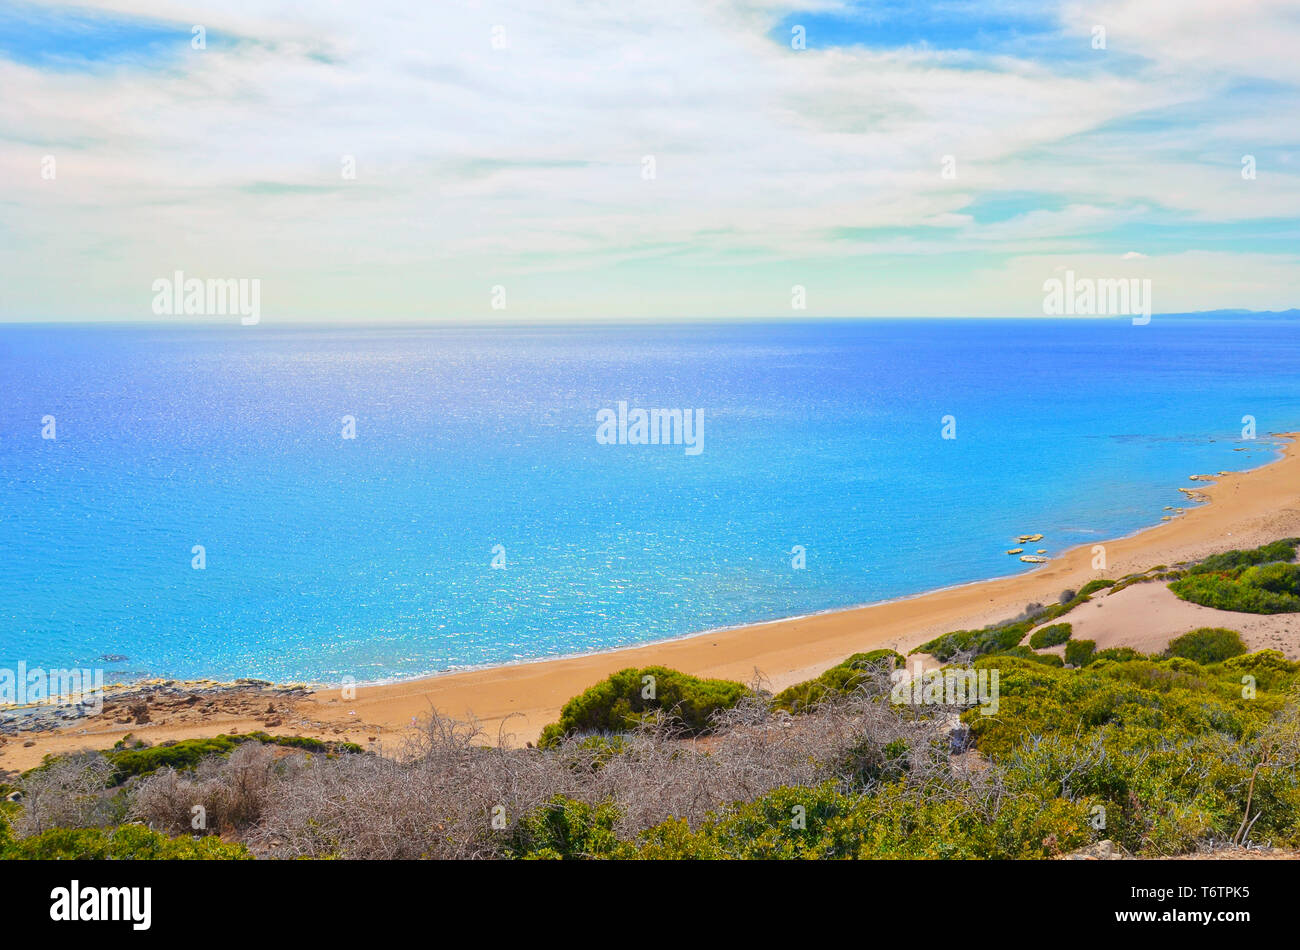 Schöne leere Strand im türkischen Nordzypern gegen die Sonne aufgenommen. Die abgelegenen Ort ist Golden Beach in Karpas Halbinsel. Tolles Ziel für Sommerferien ohne viele Touristen. Stockfoto